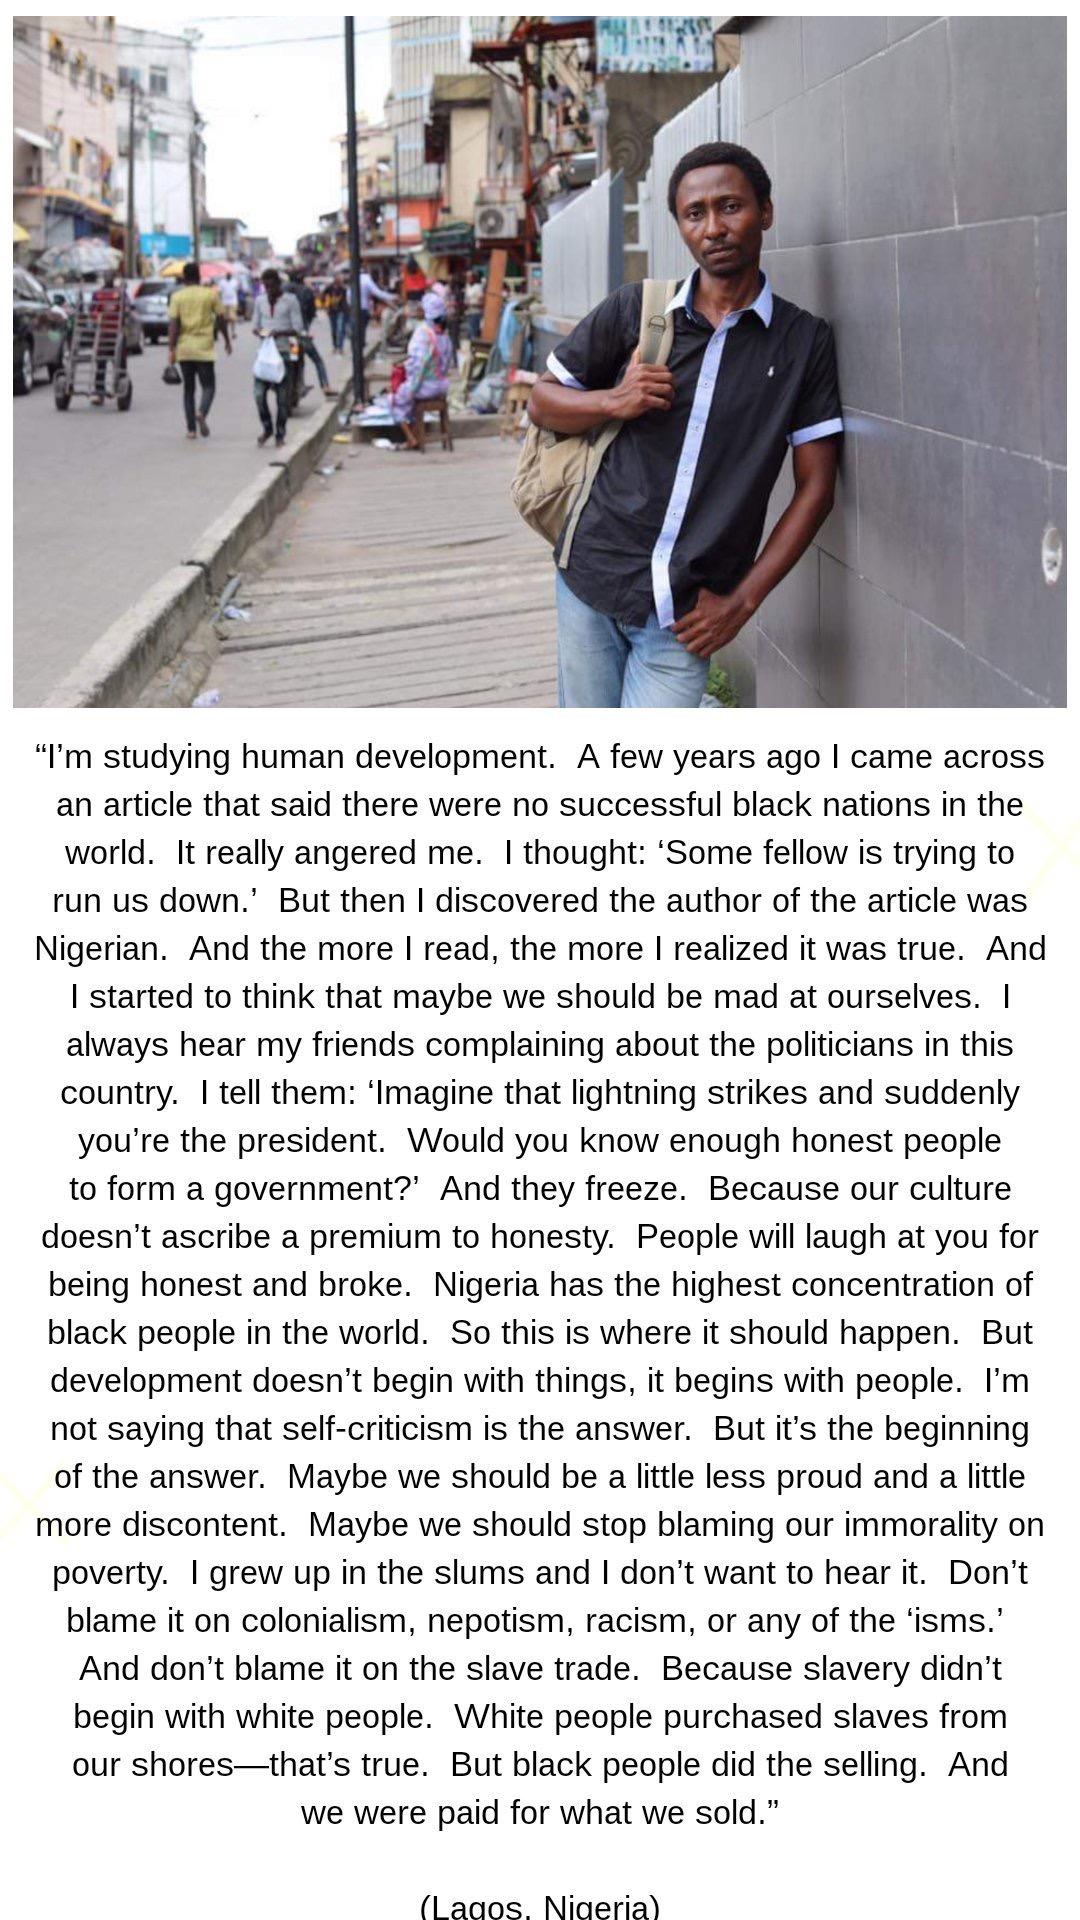 HONY: Nigeria